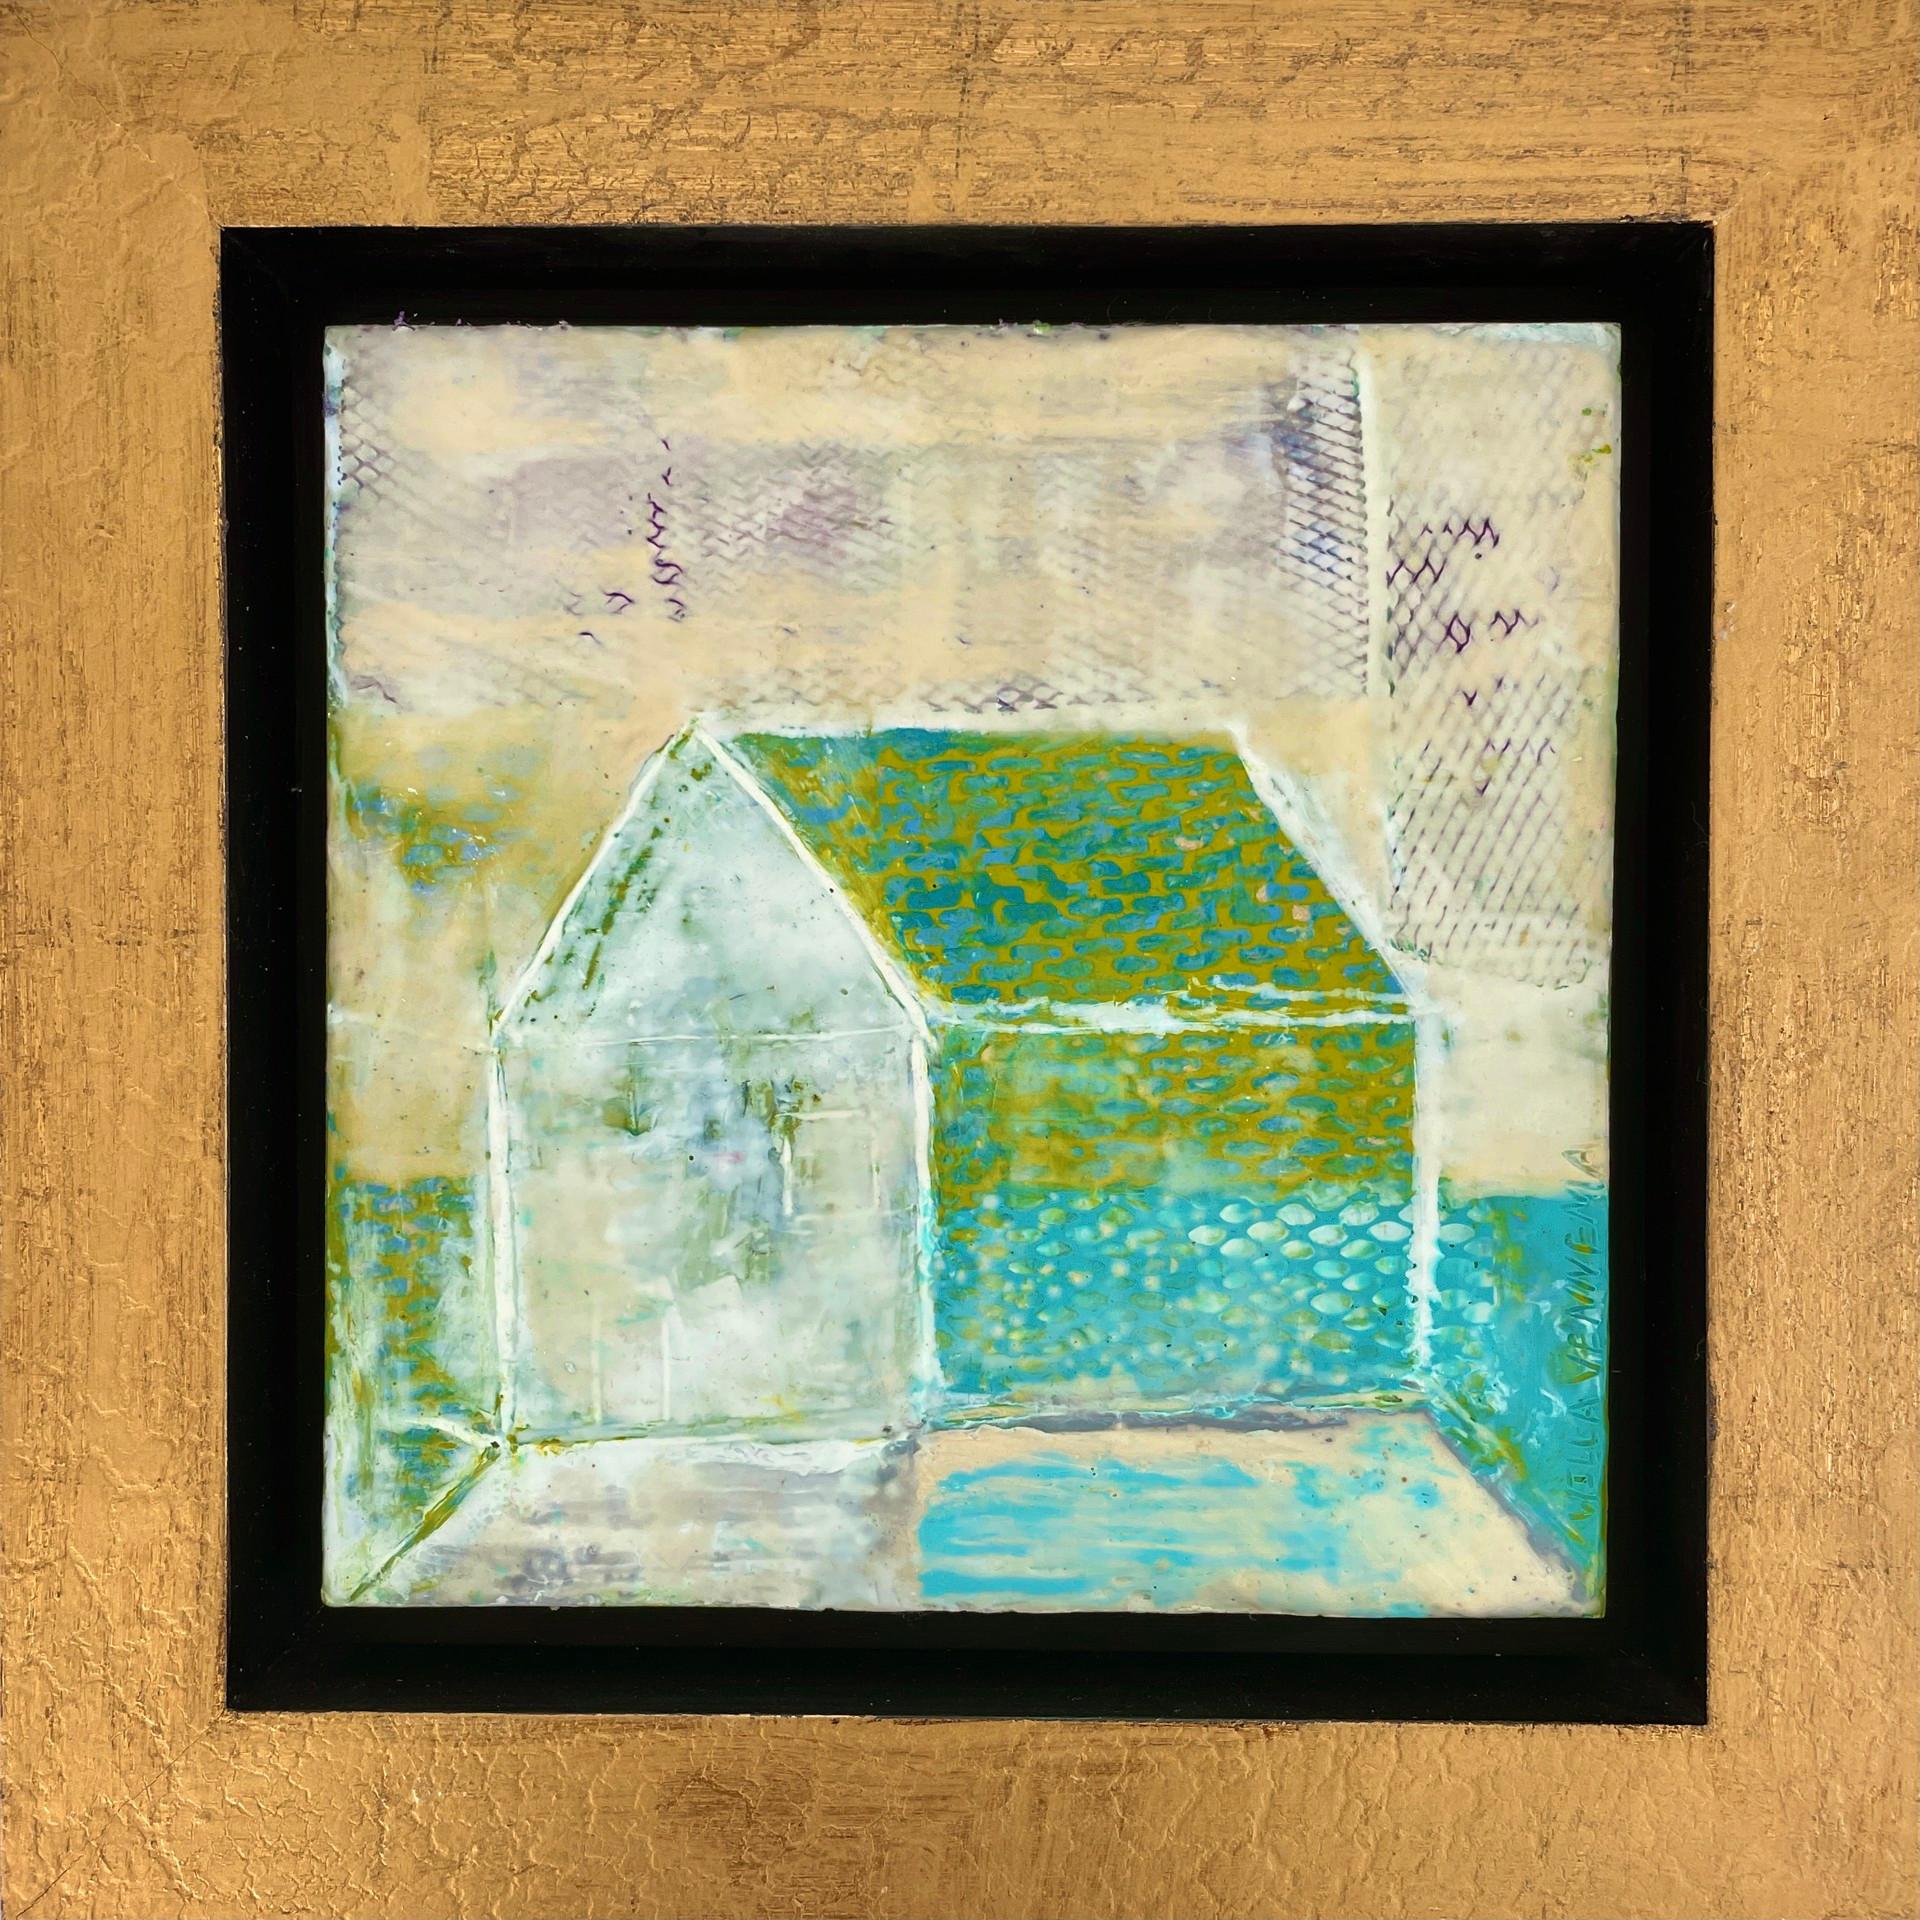 House Series Revisited #3, 2021
Framed in a wide gold leaf floater frame.
